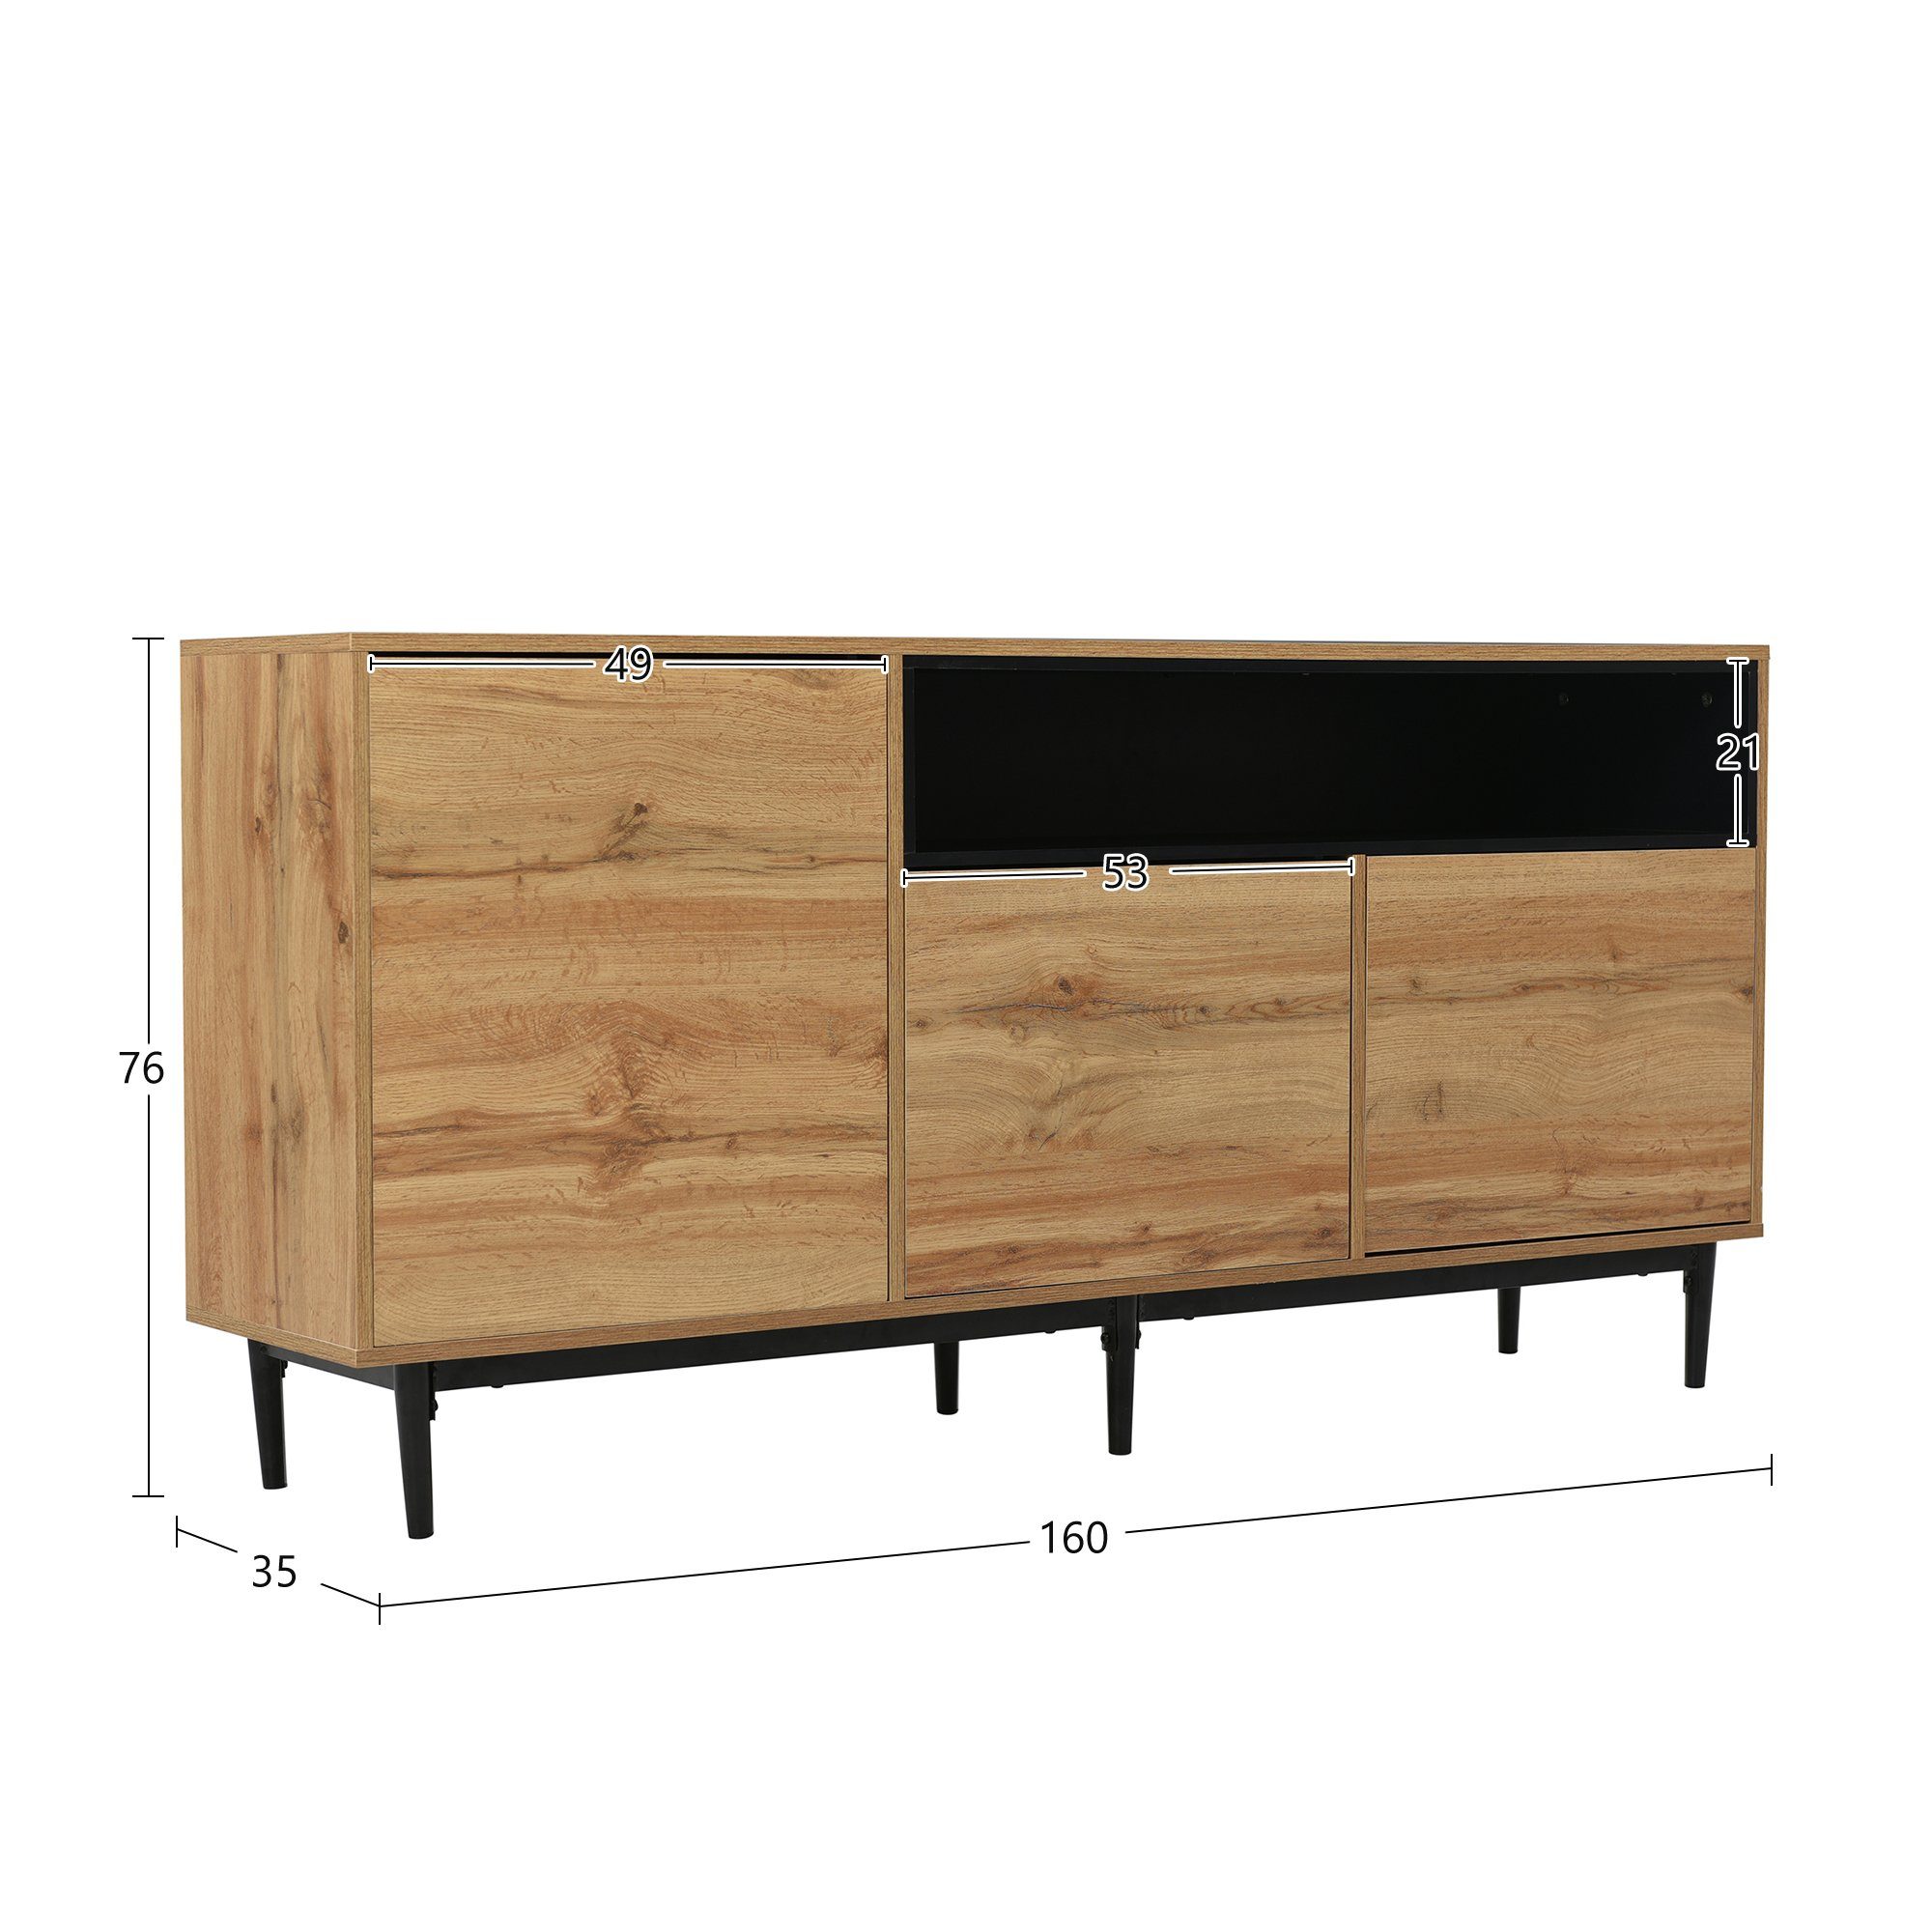 35 und 160 zuverlässig), robust sideboard Regalen mit Sideboard (Einfache platzsparendes Moderner Design, aus OKWISH x und Türen drei 76 Holz Montage, cm x